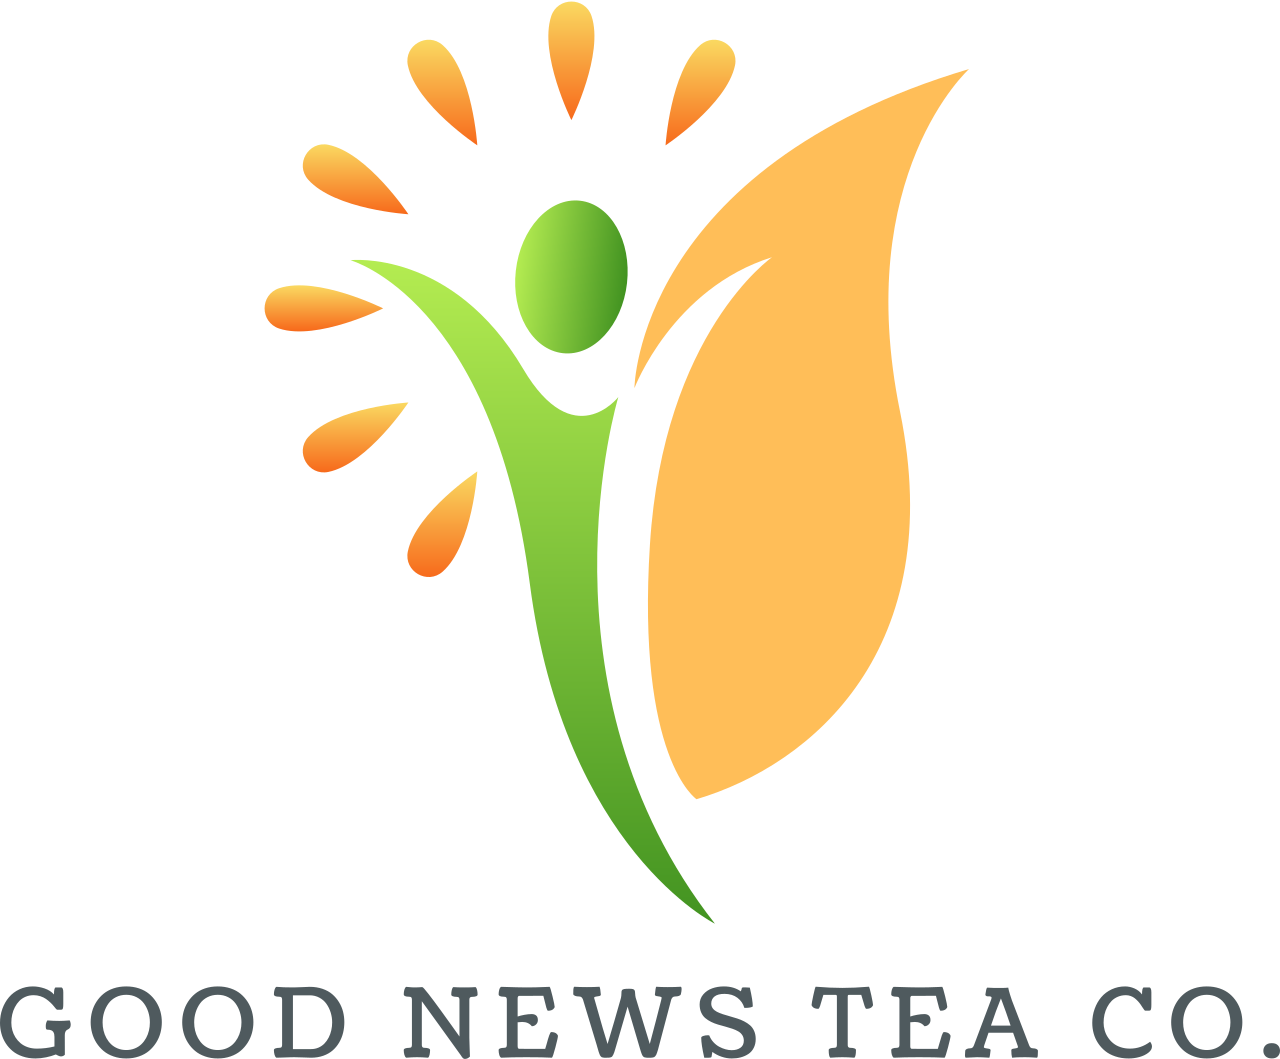 GOOD NEWS TEA Co.'s web page